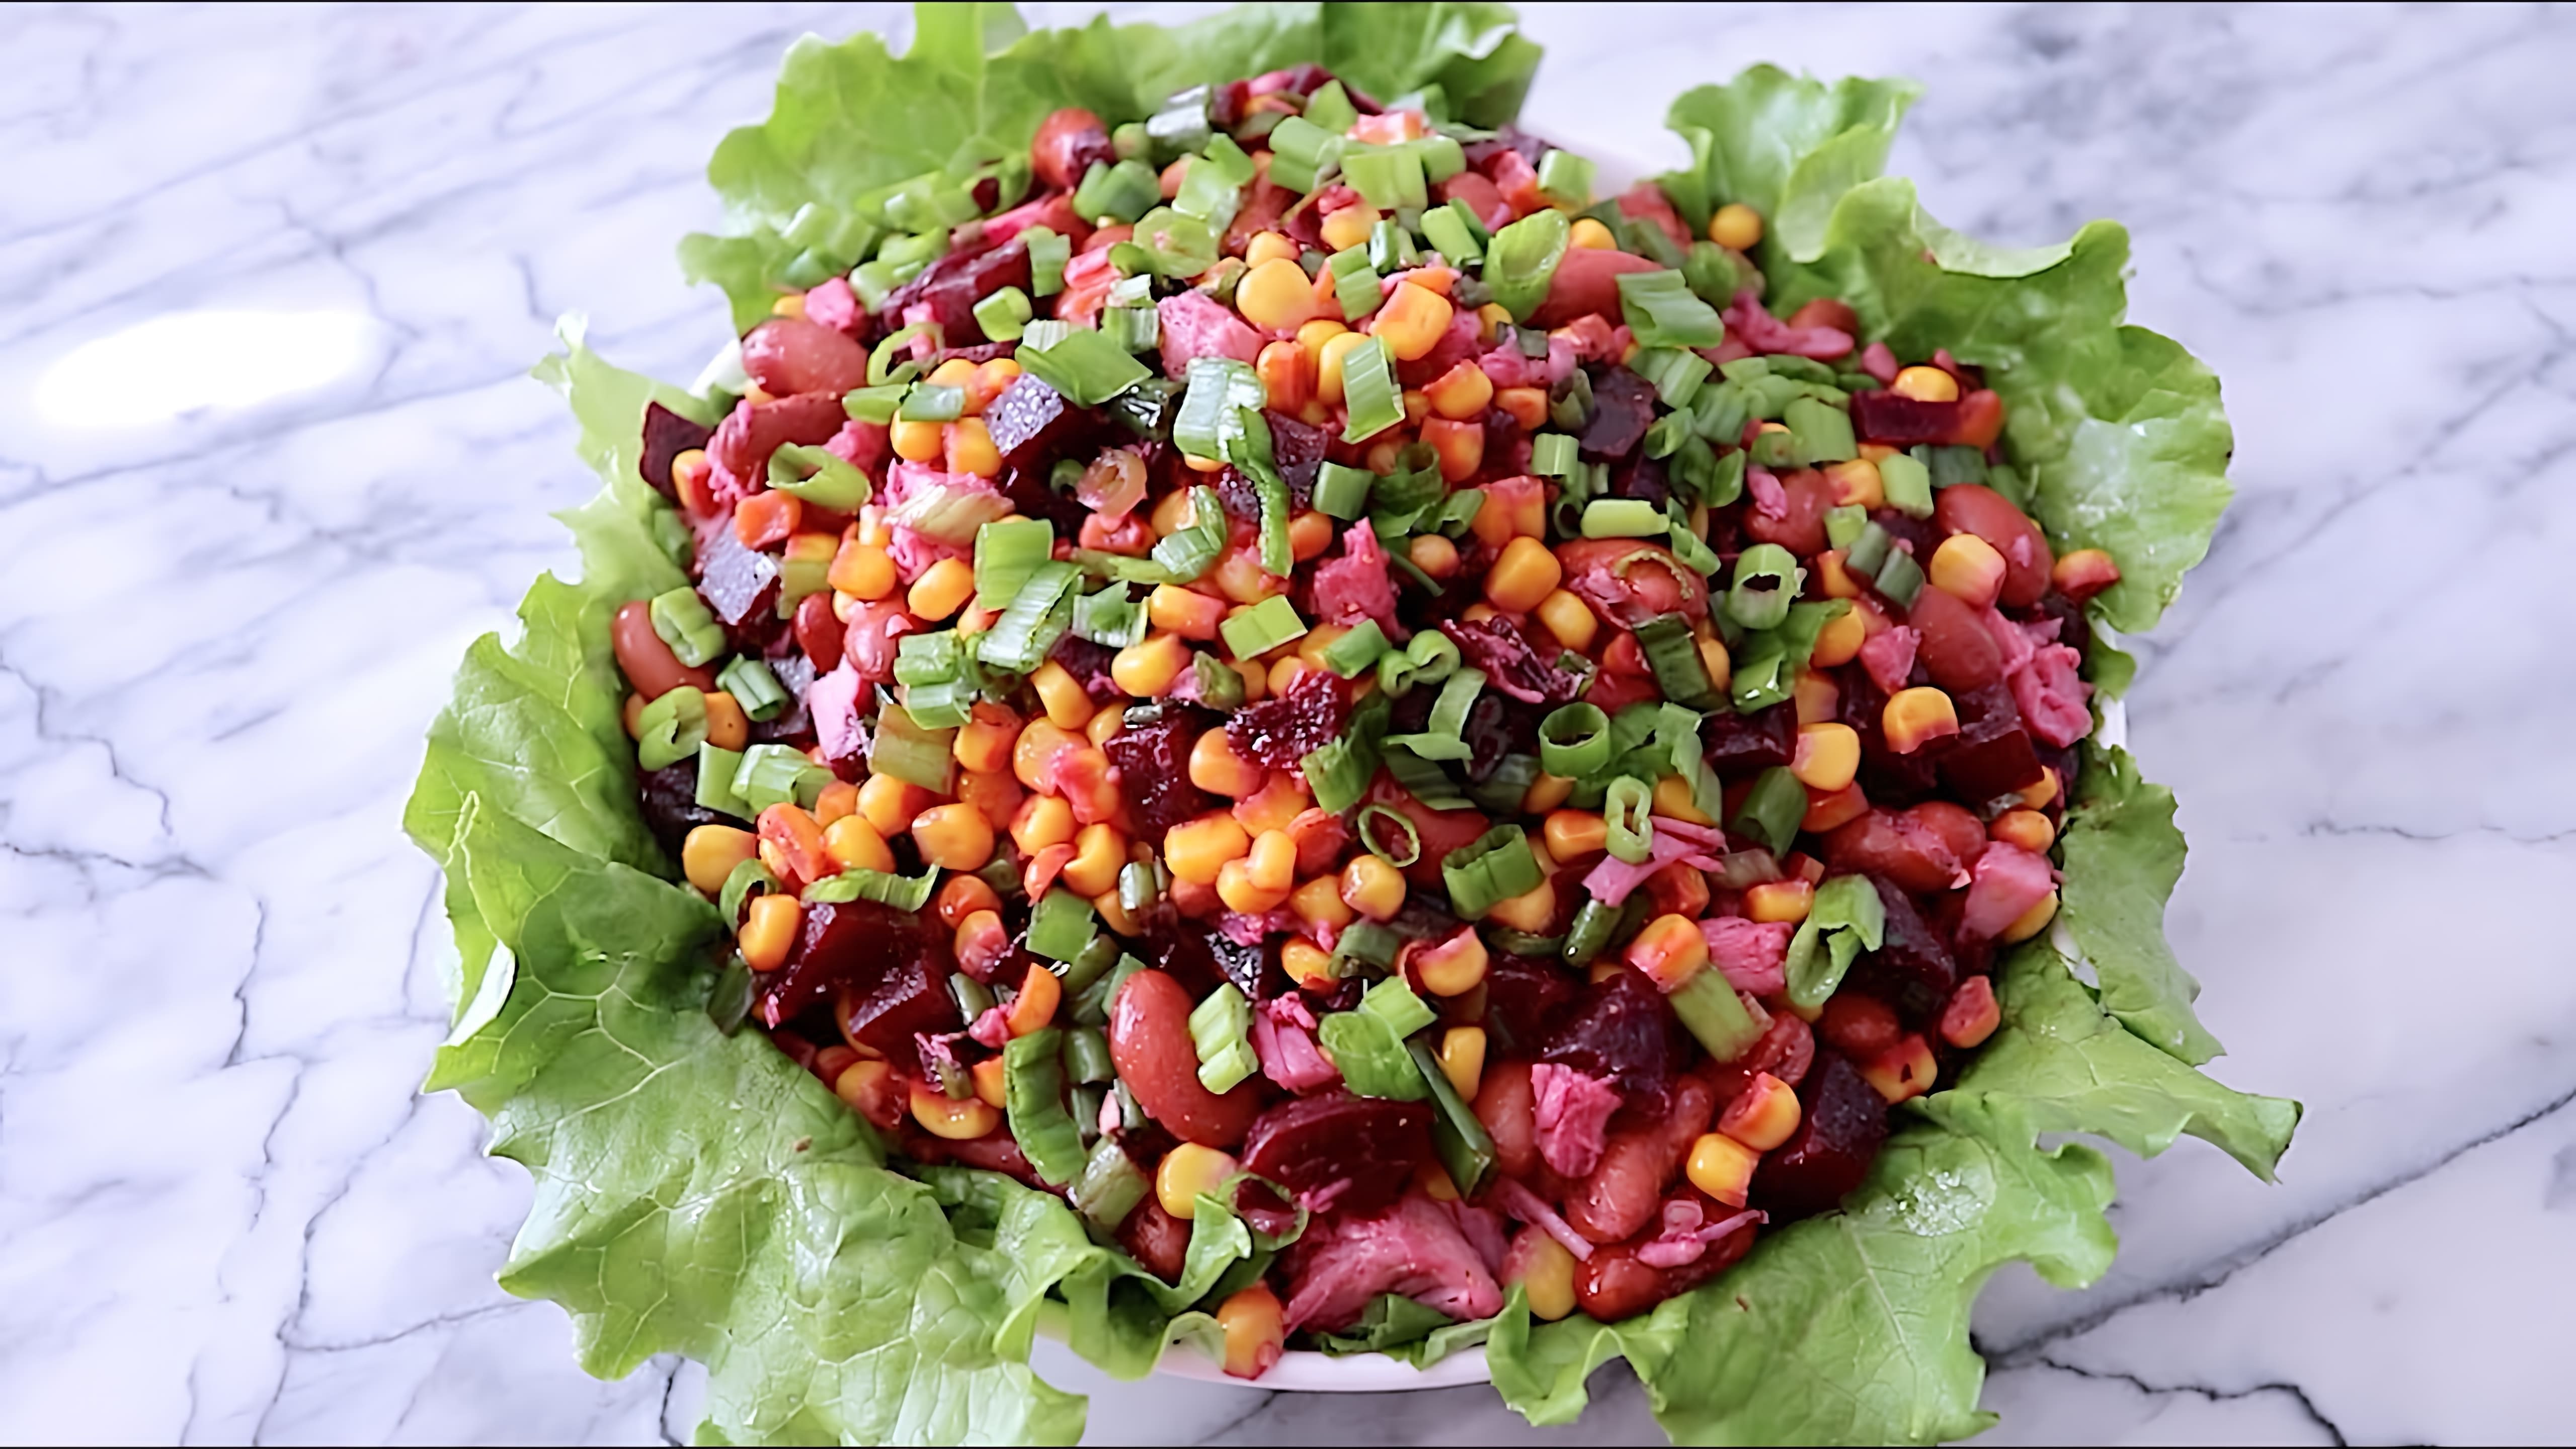 В этом видео демонстрируется процесс приготовления салата из вареной свеклы, кукурузы, мяса и фасоли